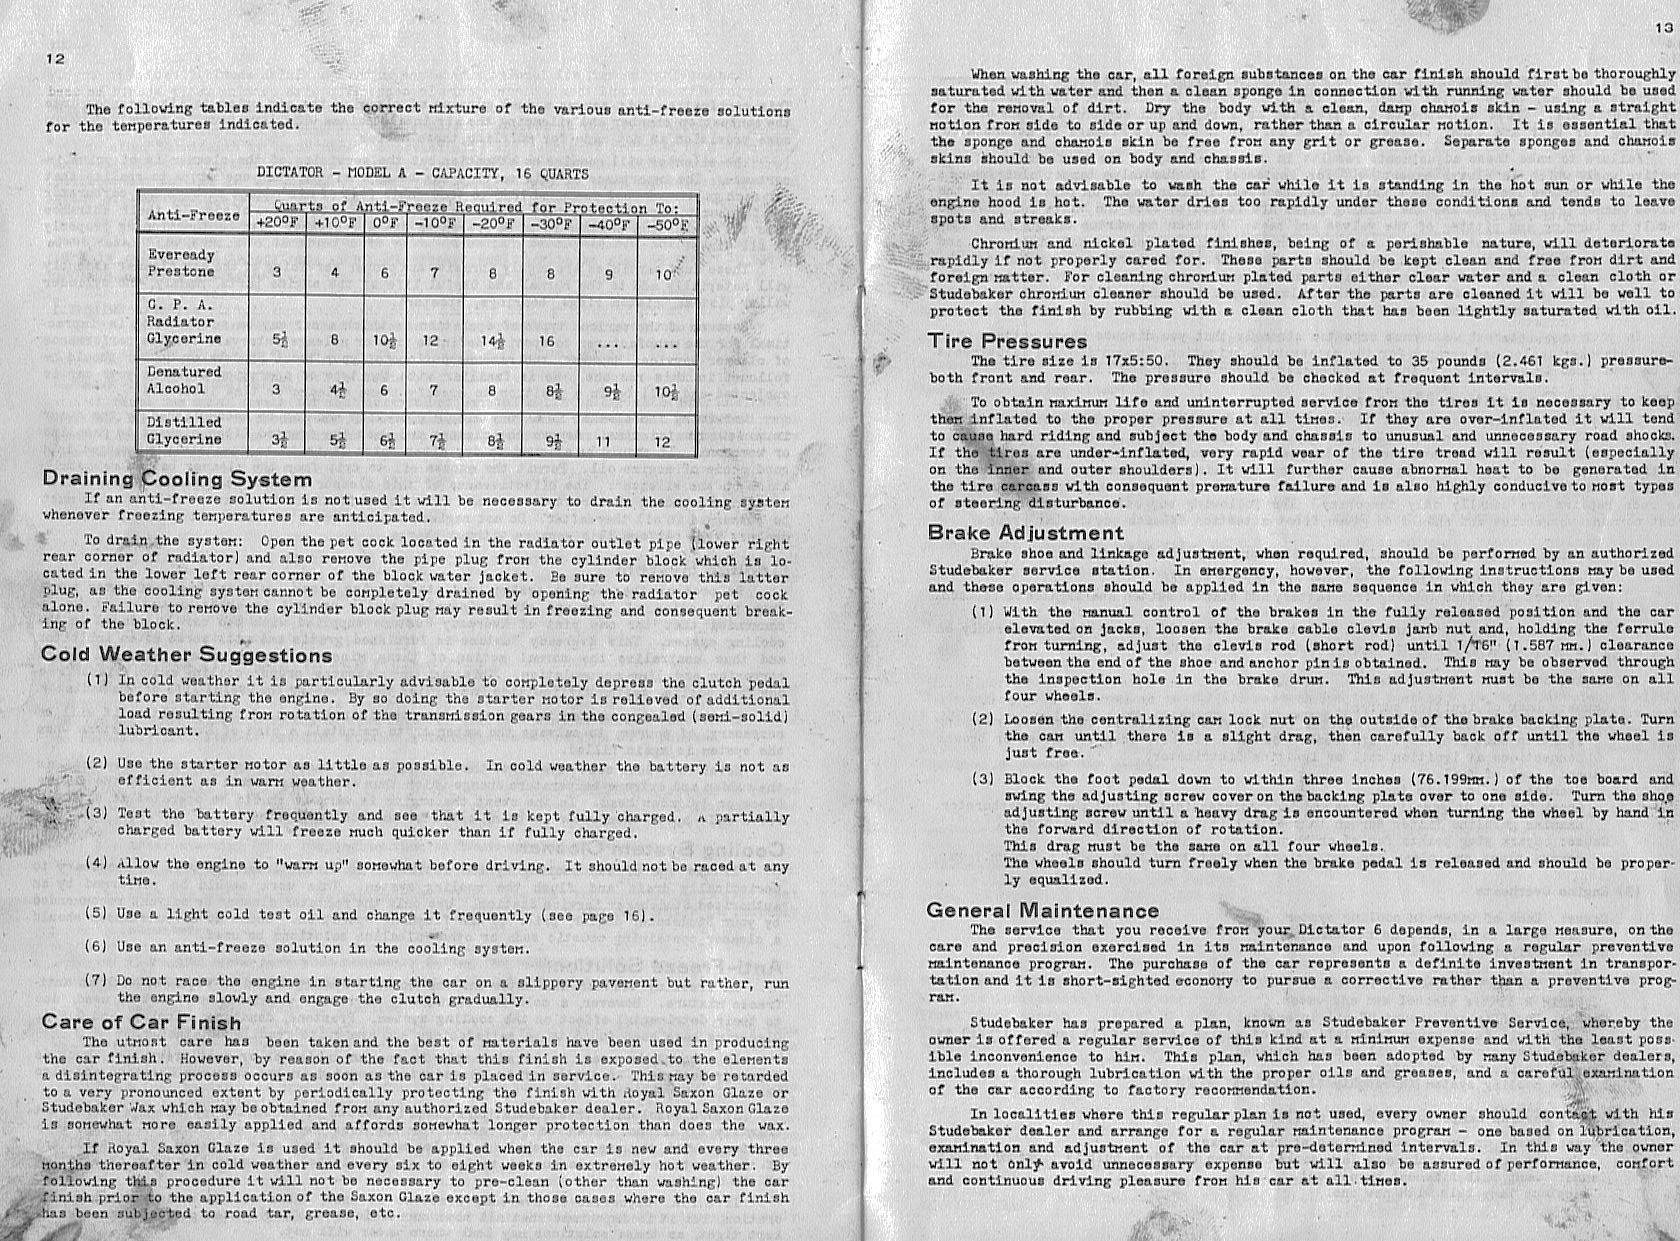 1934 Studebaker Dictator Manual-12-13